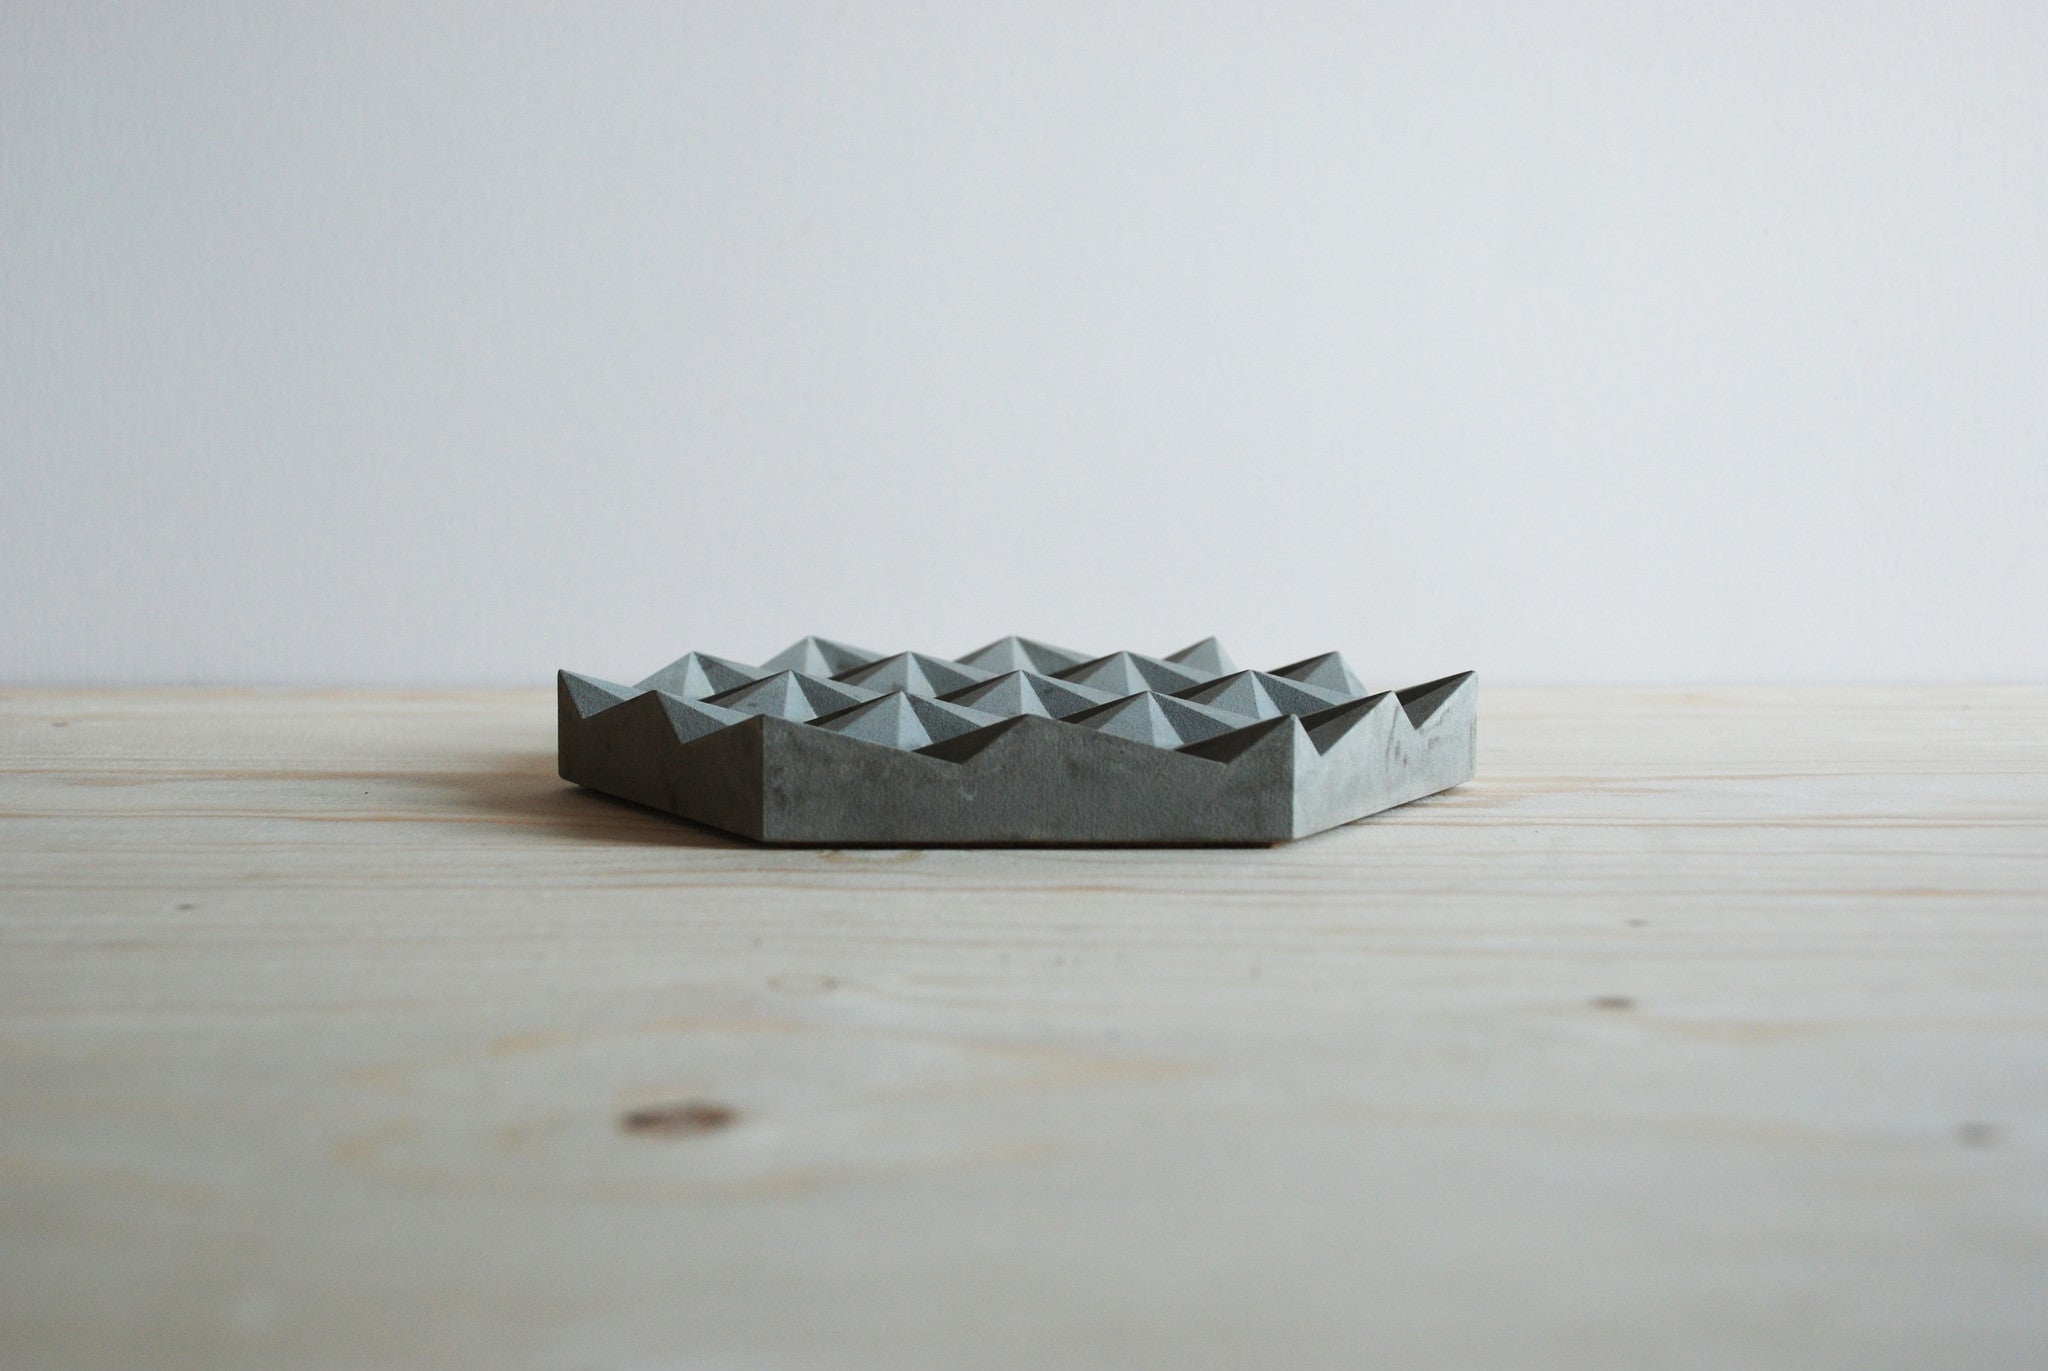 Origami Concrete Trivet